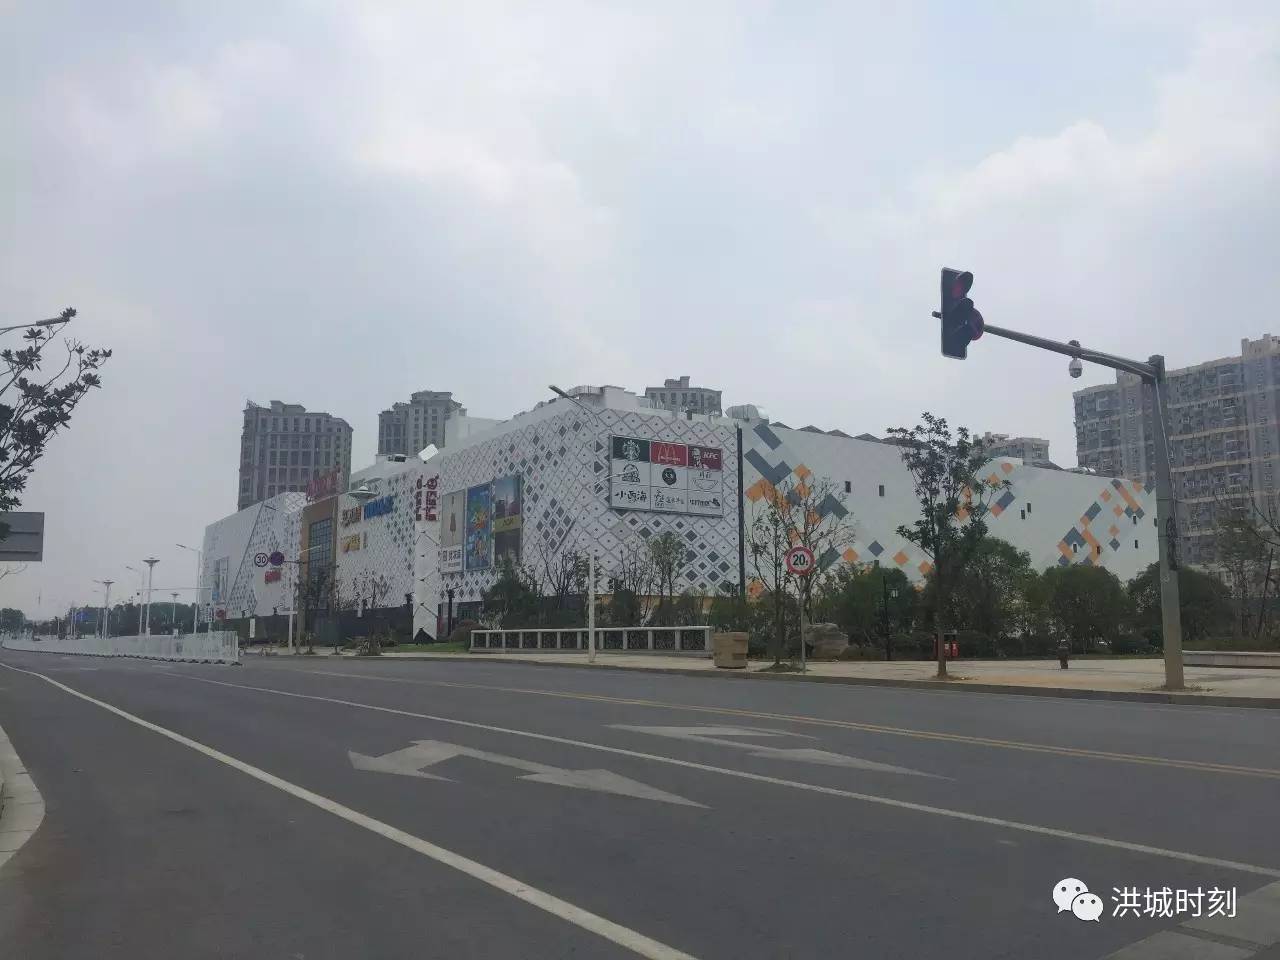 从万达方面获悉,王健林并非如传言所说要卖掉南昌西湖万达广场,属于